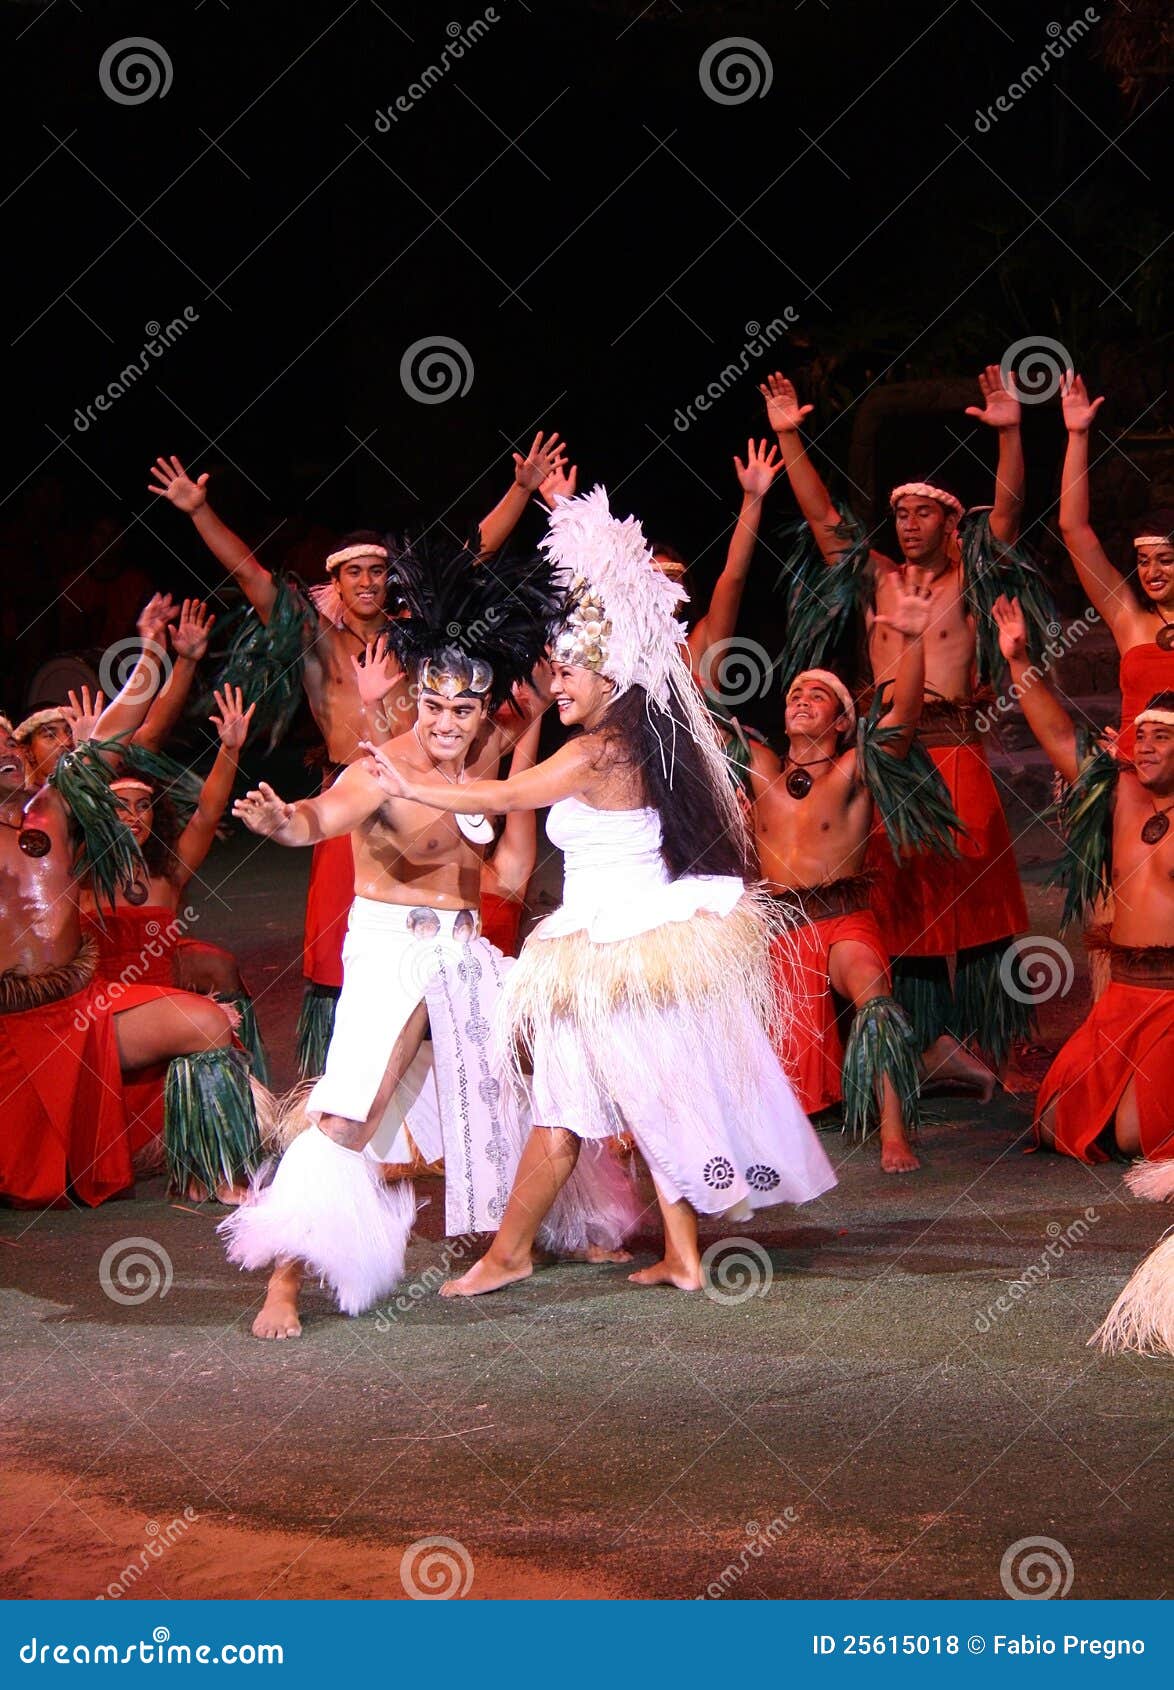 Polynesisch huwelijk redactionele stock foto. Image of cultuur - 25615018